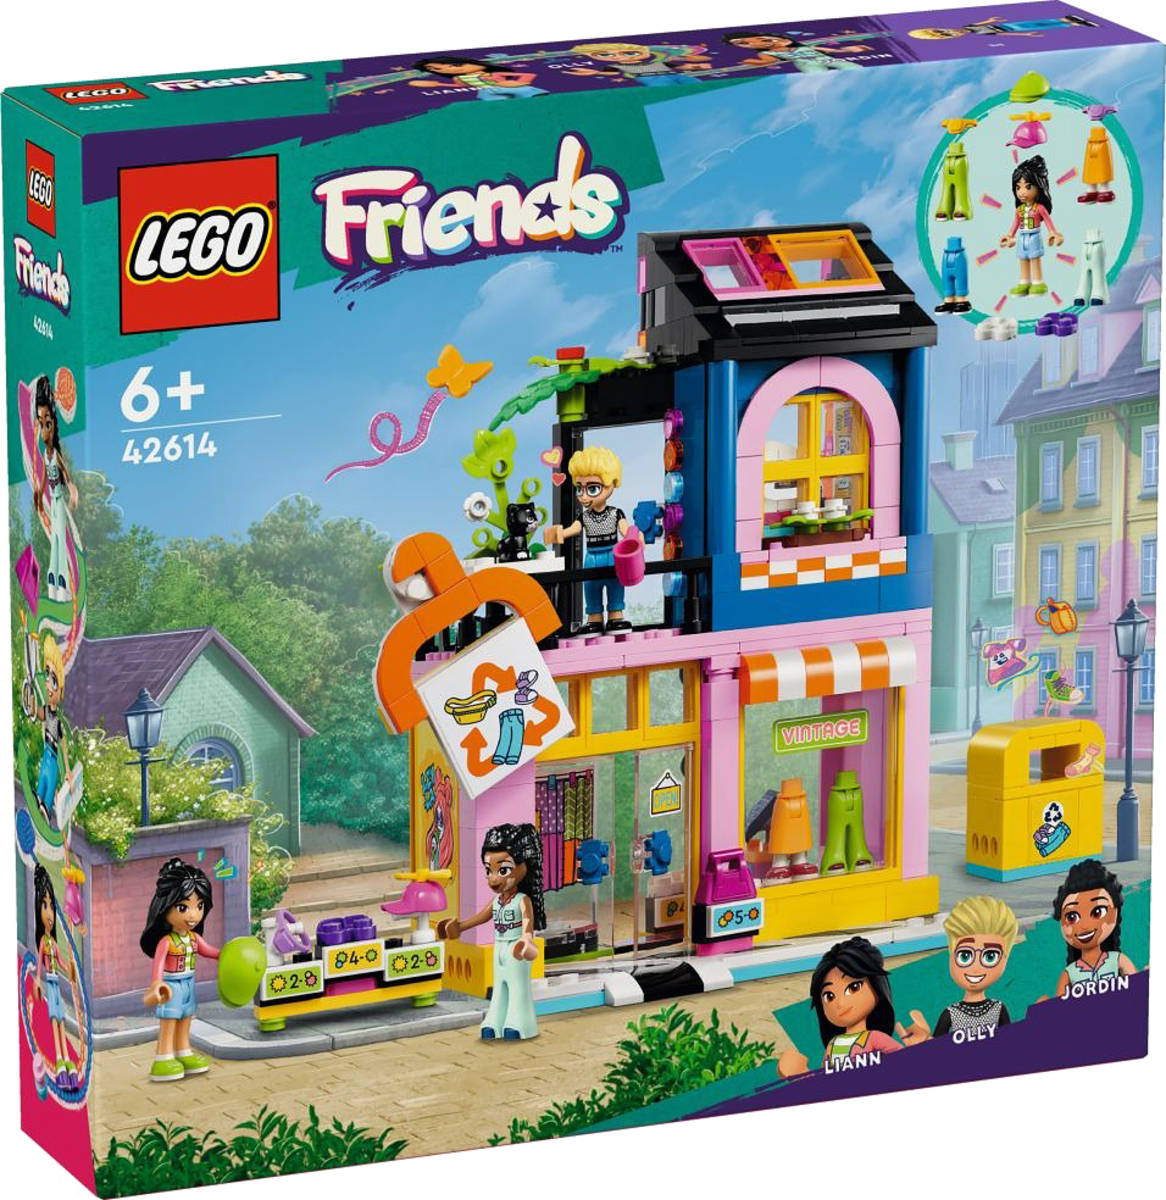 LEGO FRIENDS Obchod s retro obleèením 42614 STAVEBNICE - zvìtšit obrázek